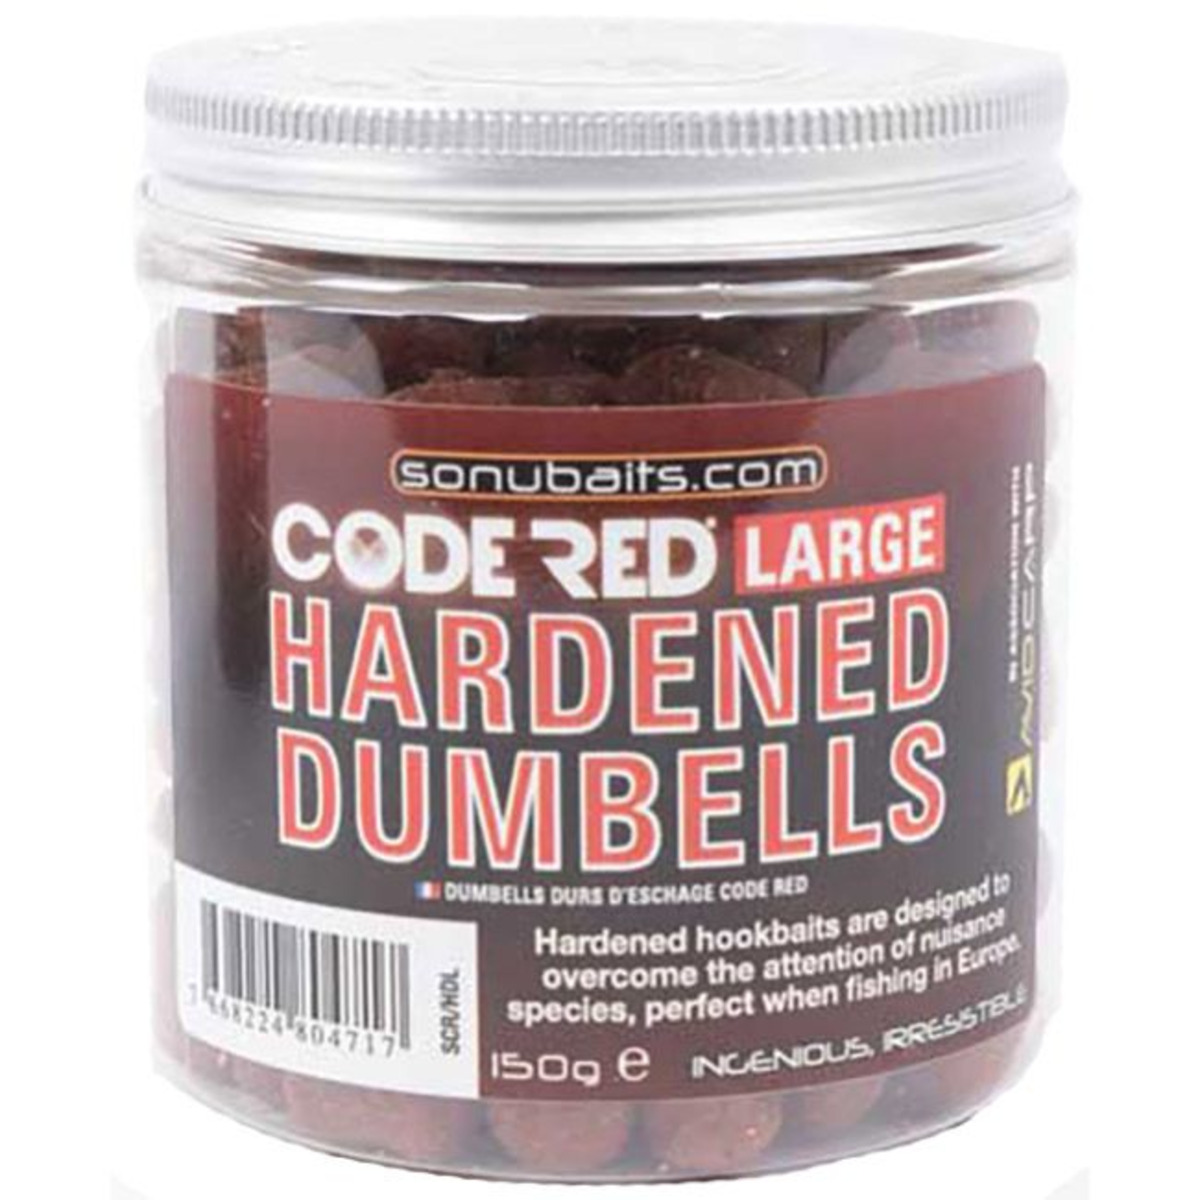 Sonubaits Code Red Hardened Dumbell Hookbaits - Large - 150 g